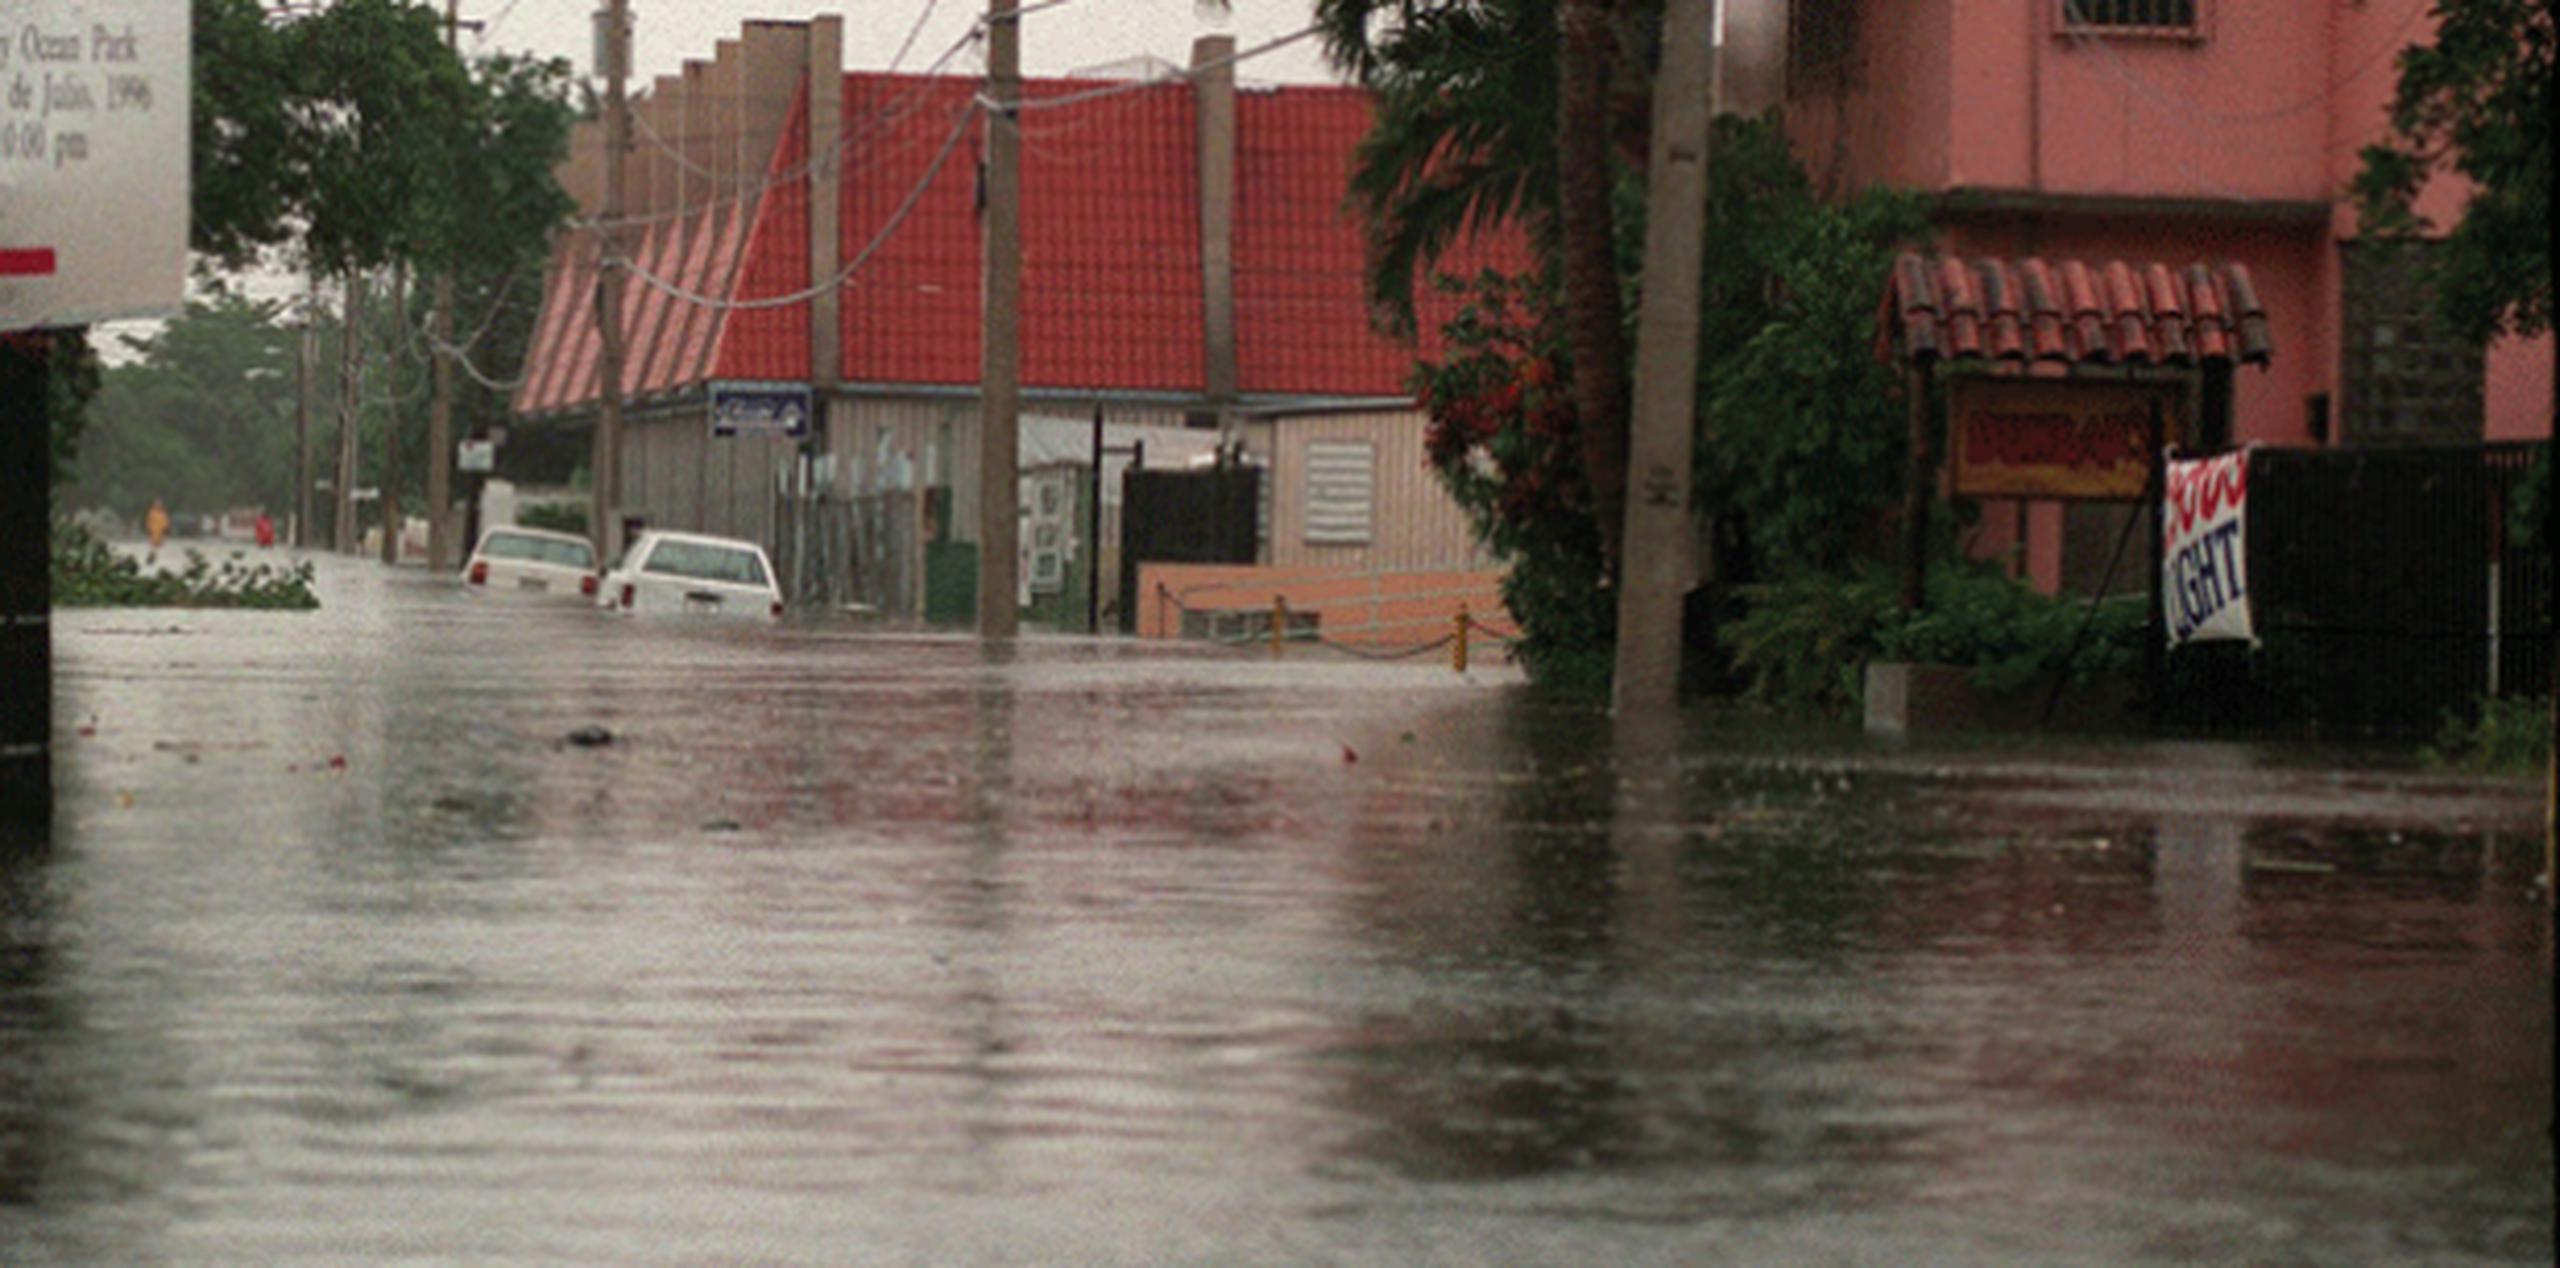 La avenida Isla Verde quedó intransitable al igual que la marginal Villamar debido a que tienen tramos inundados. (Archivo)